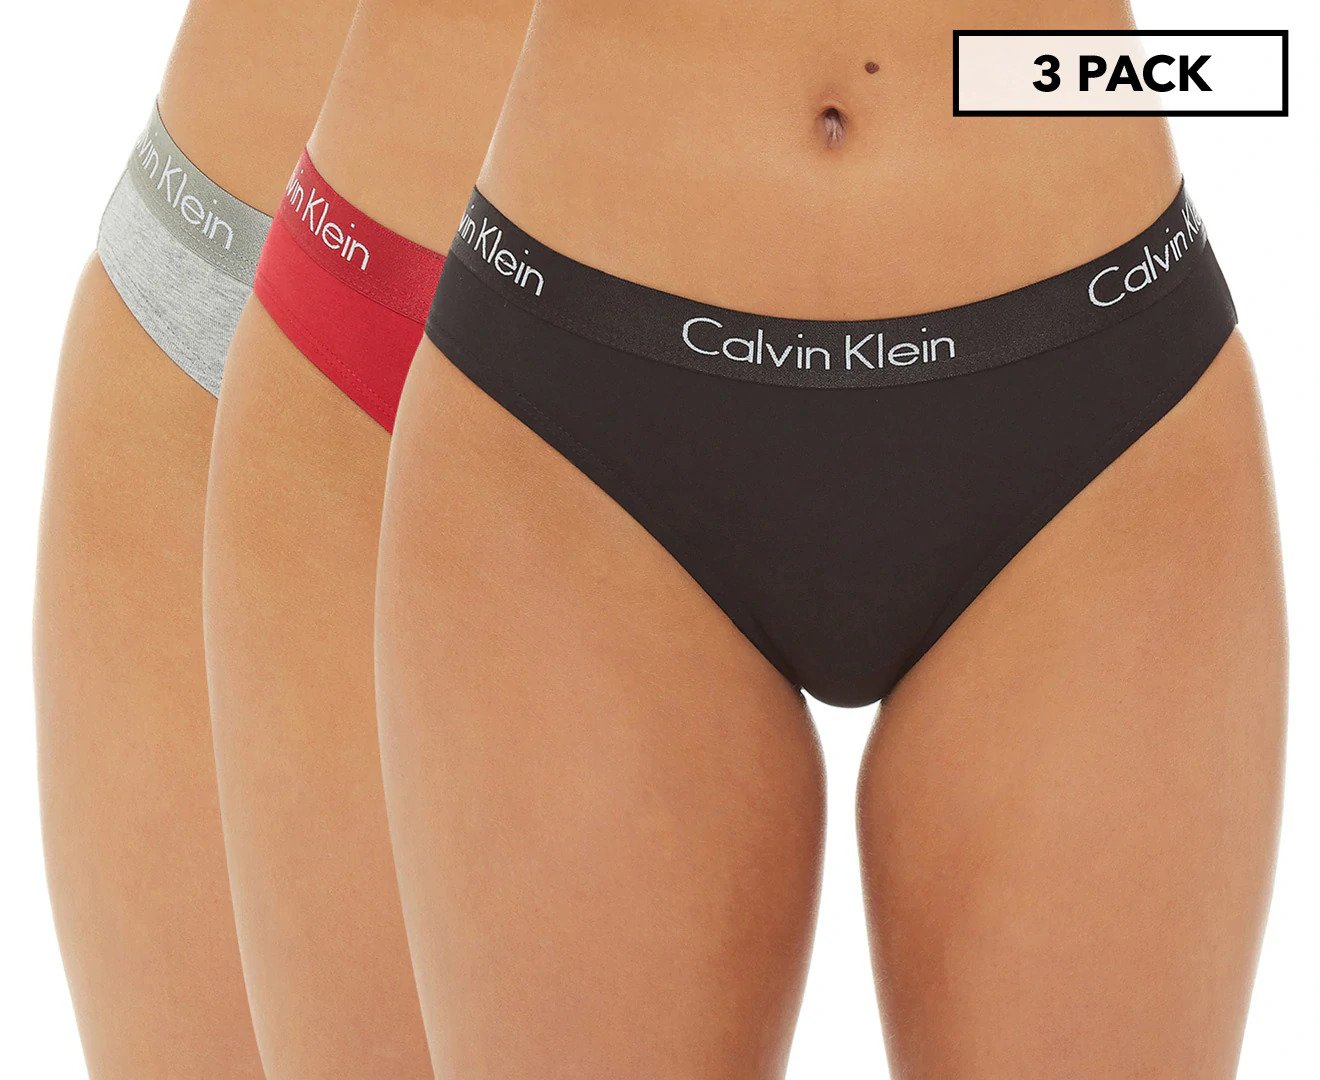 Calvin Klein Women's Motive Cotton Bikini Briefs 3-Pack - Black/Red/Grey Heather